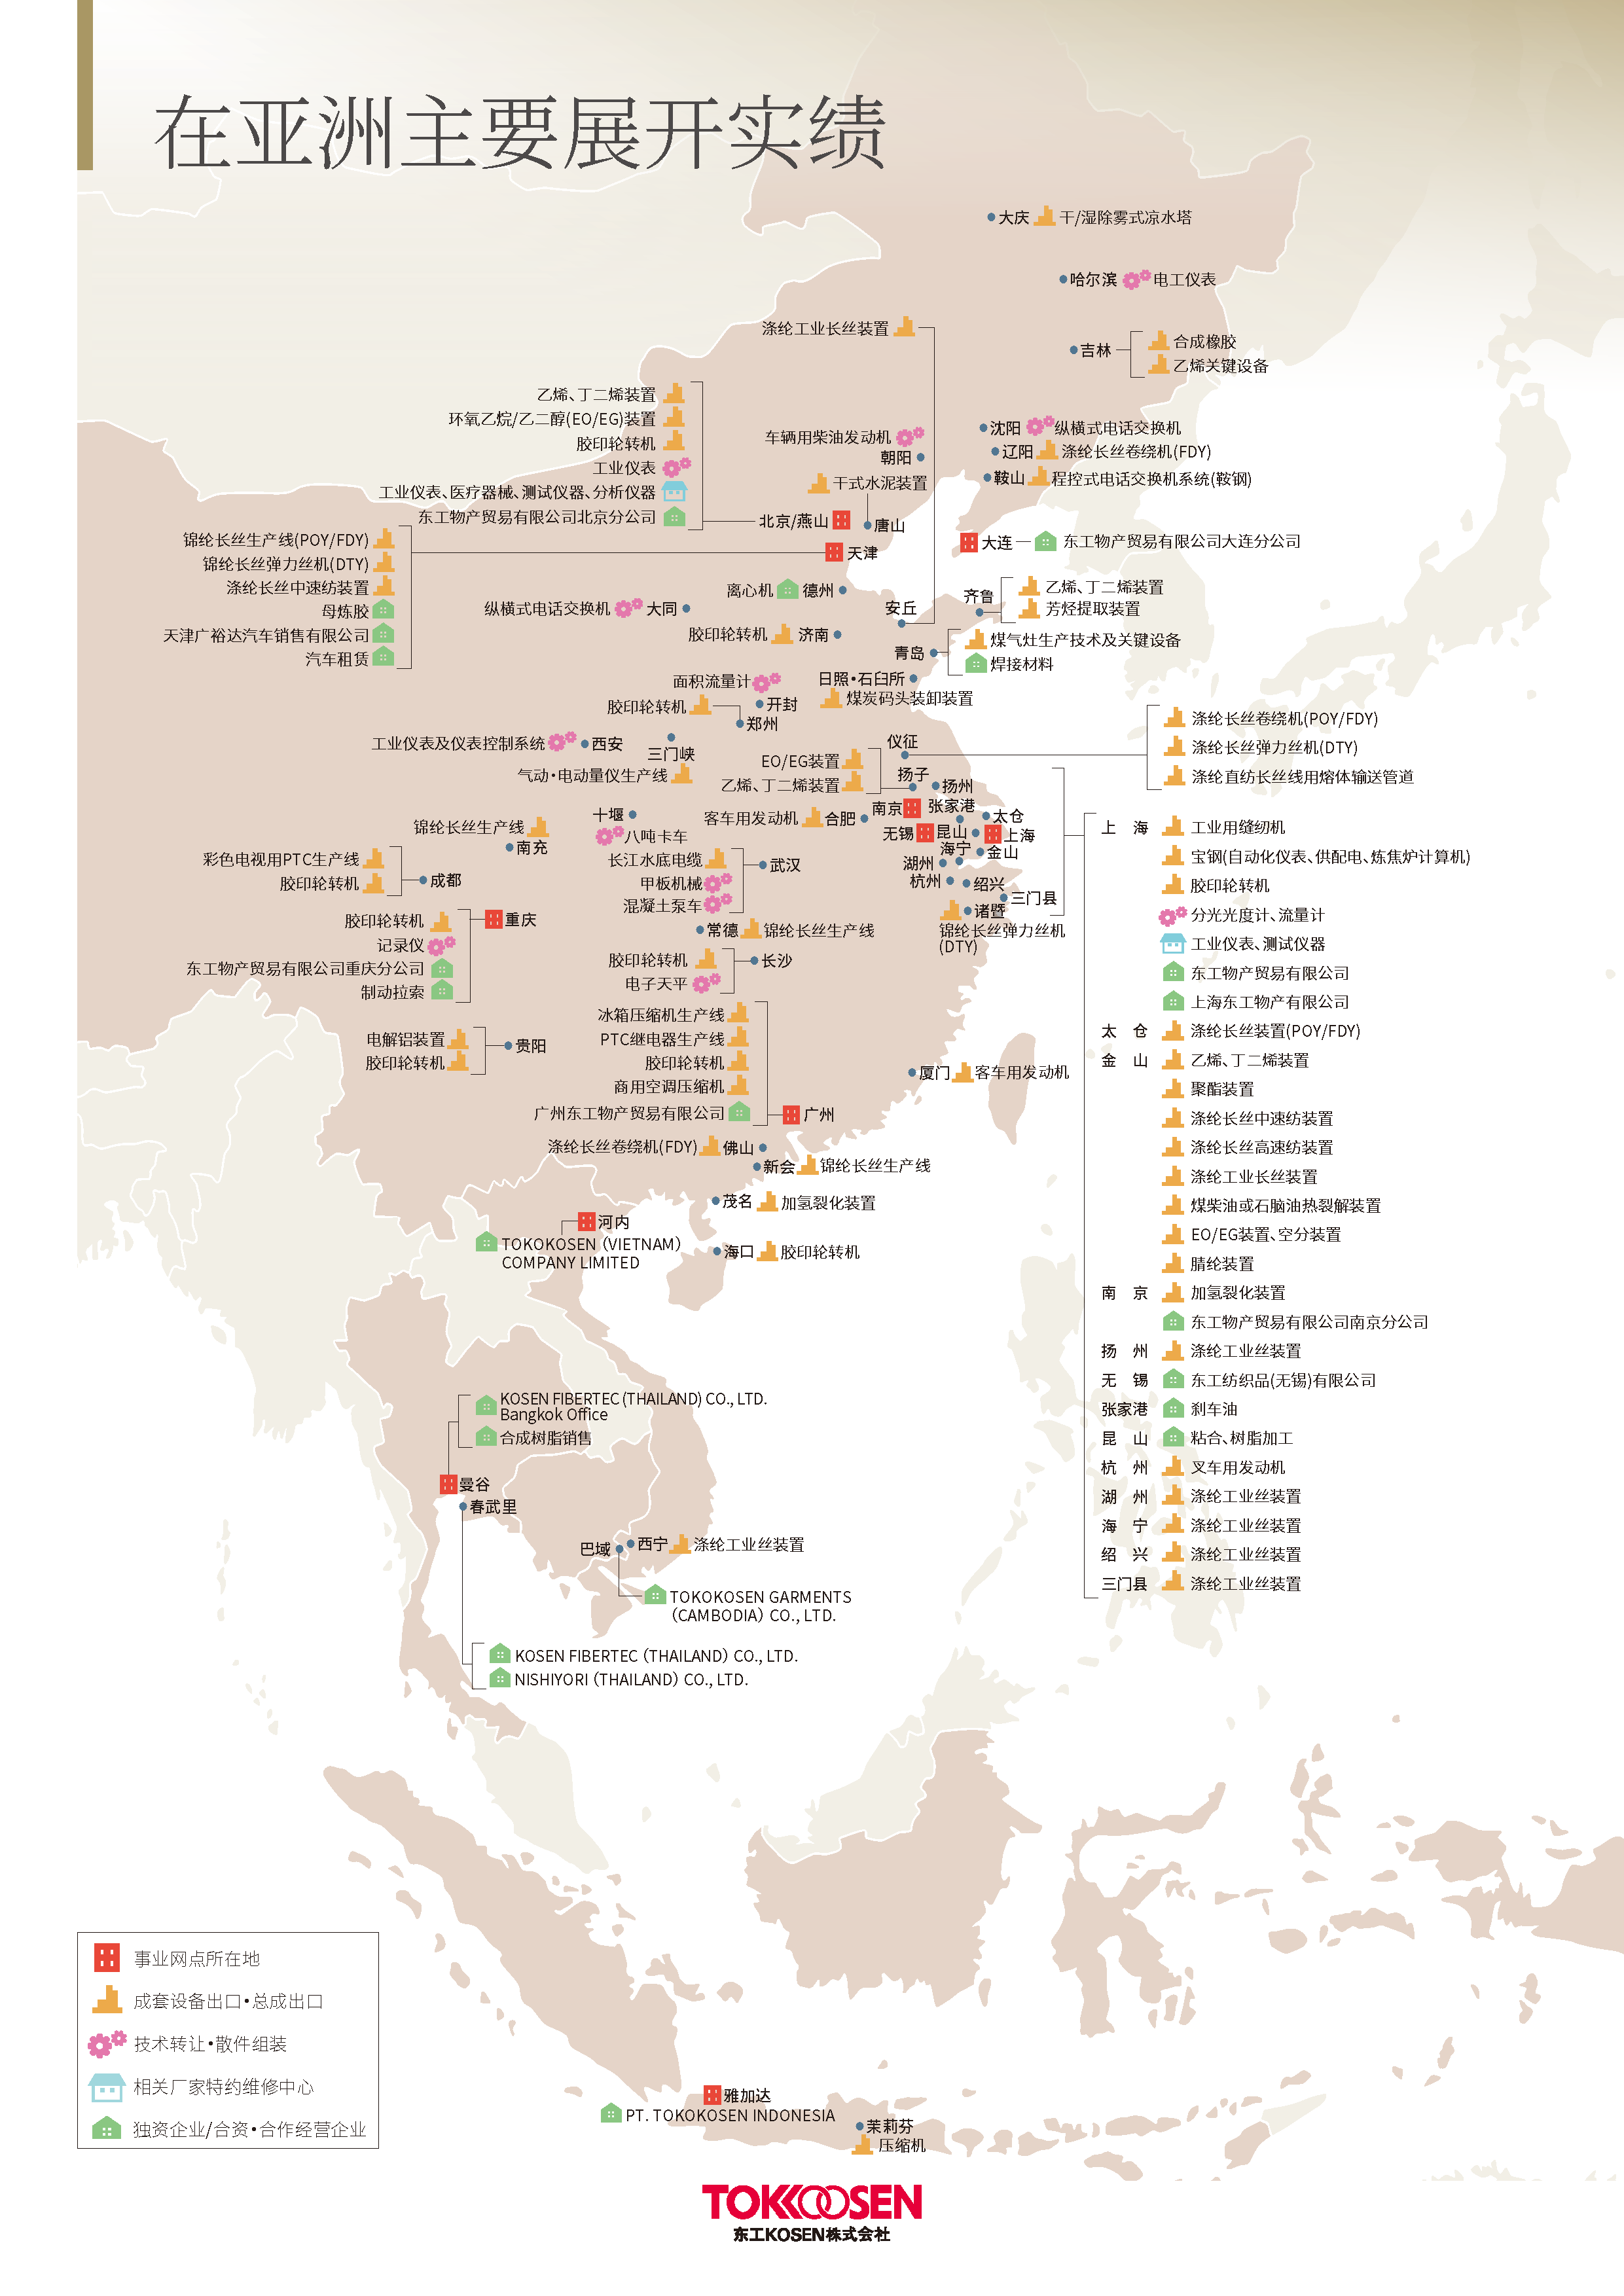 亚洲事业开展实绩示意地图